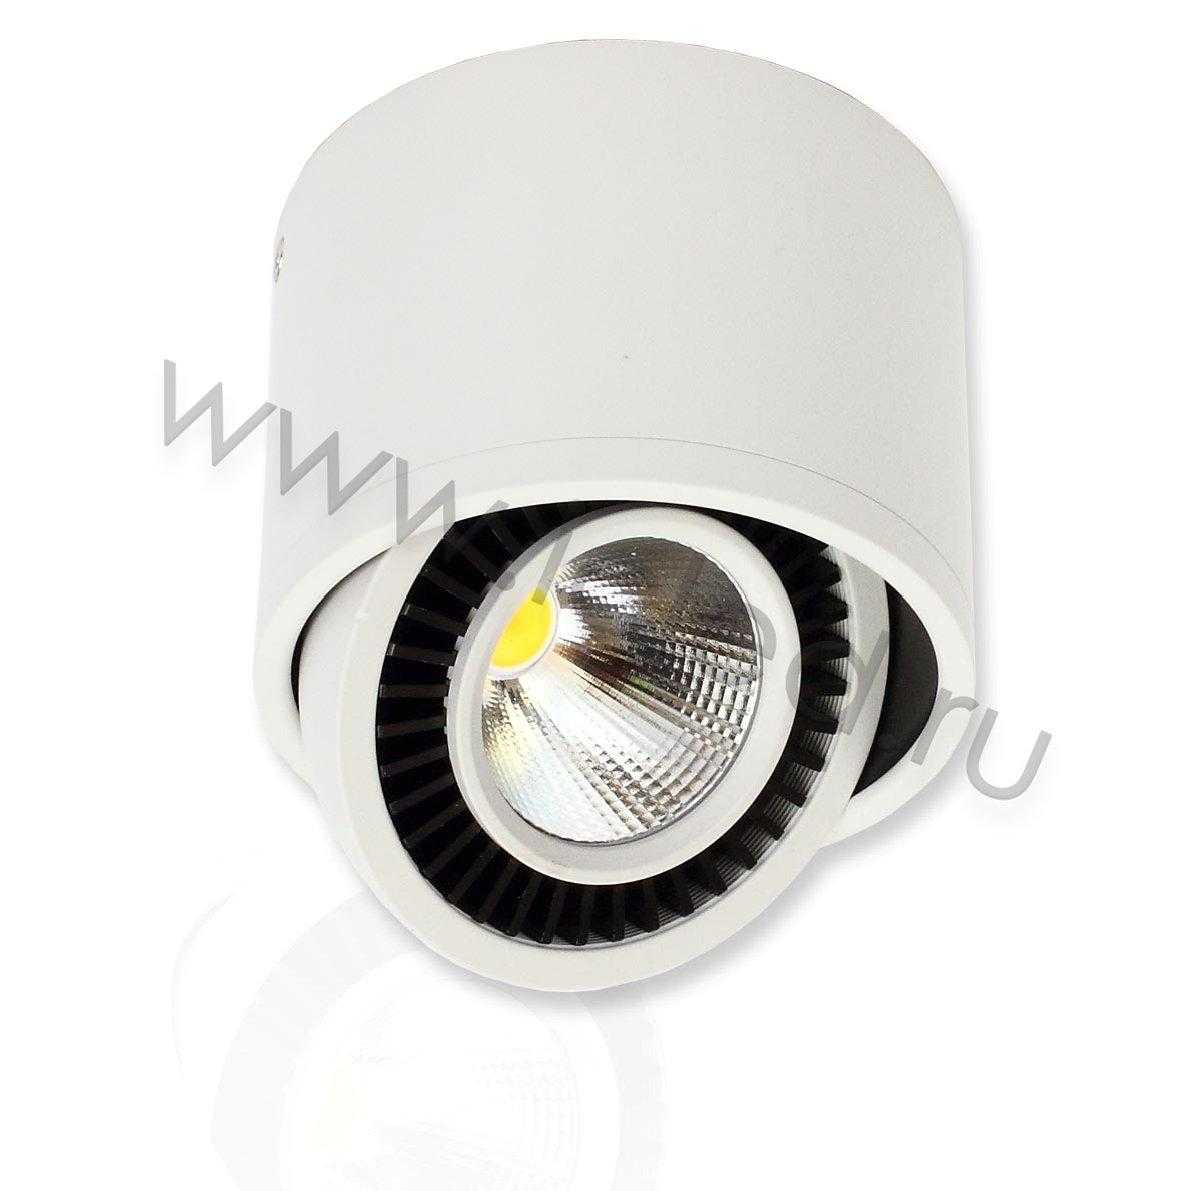 Светодиодные светильники Светодиодный светильник JH151B-15W B790 (15W, white)